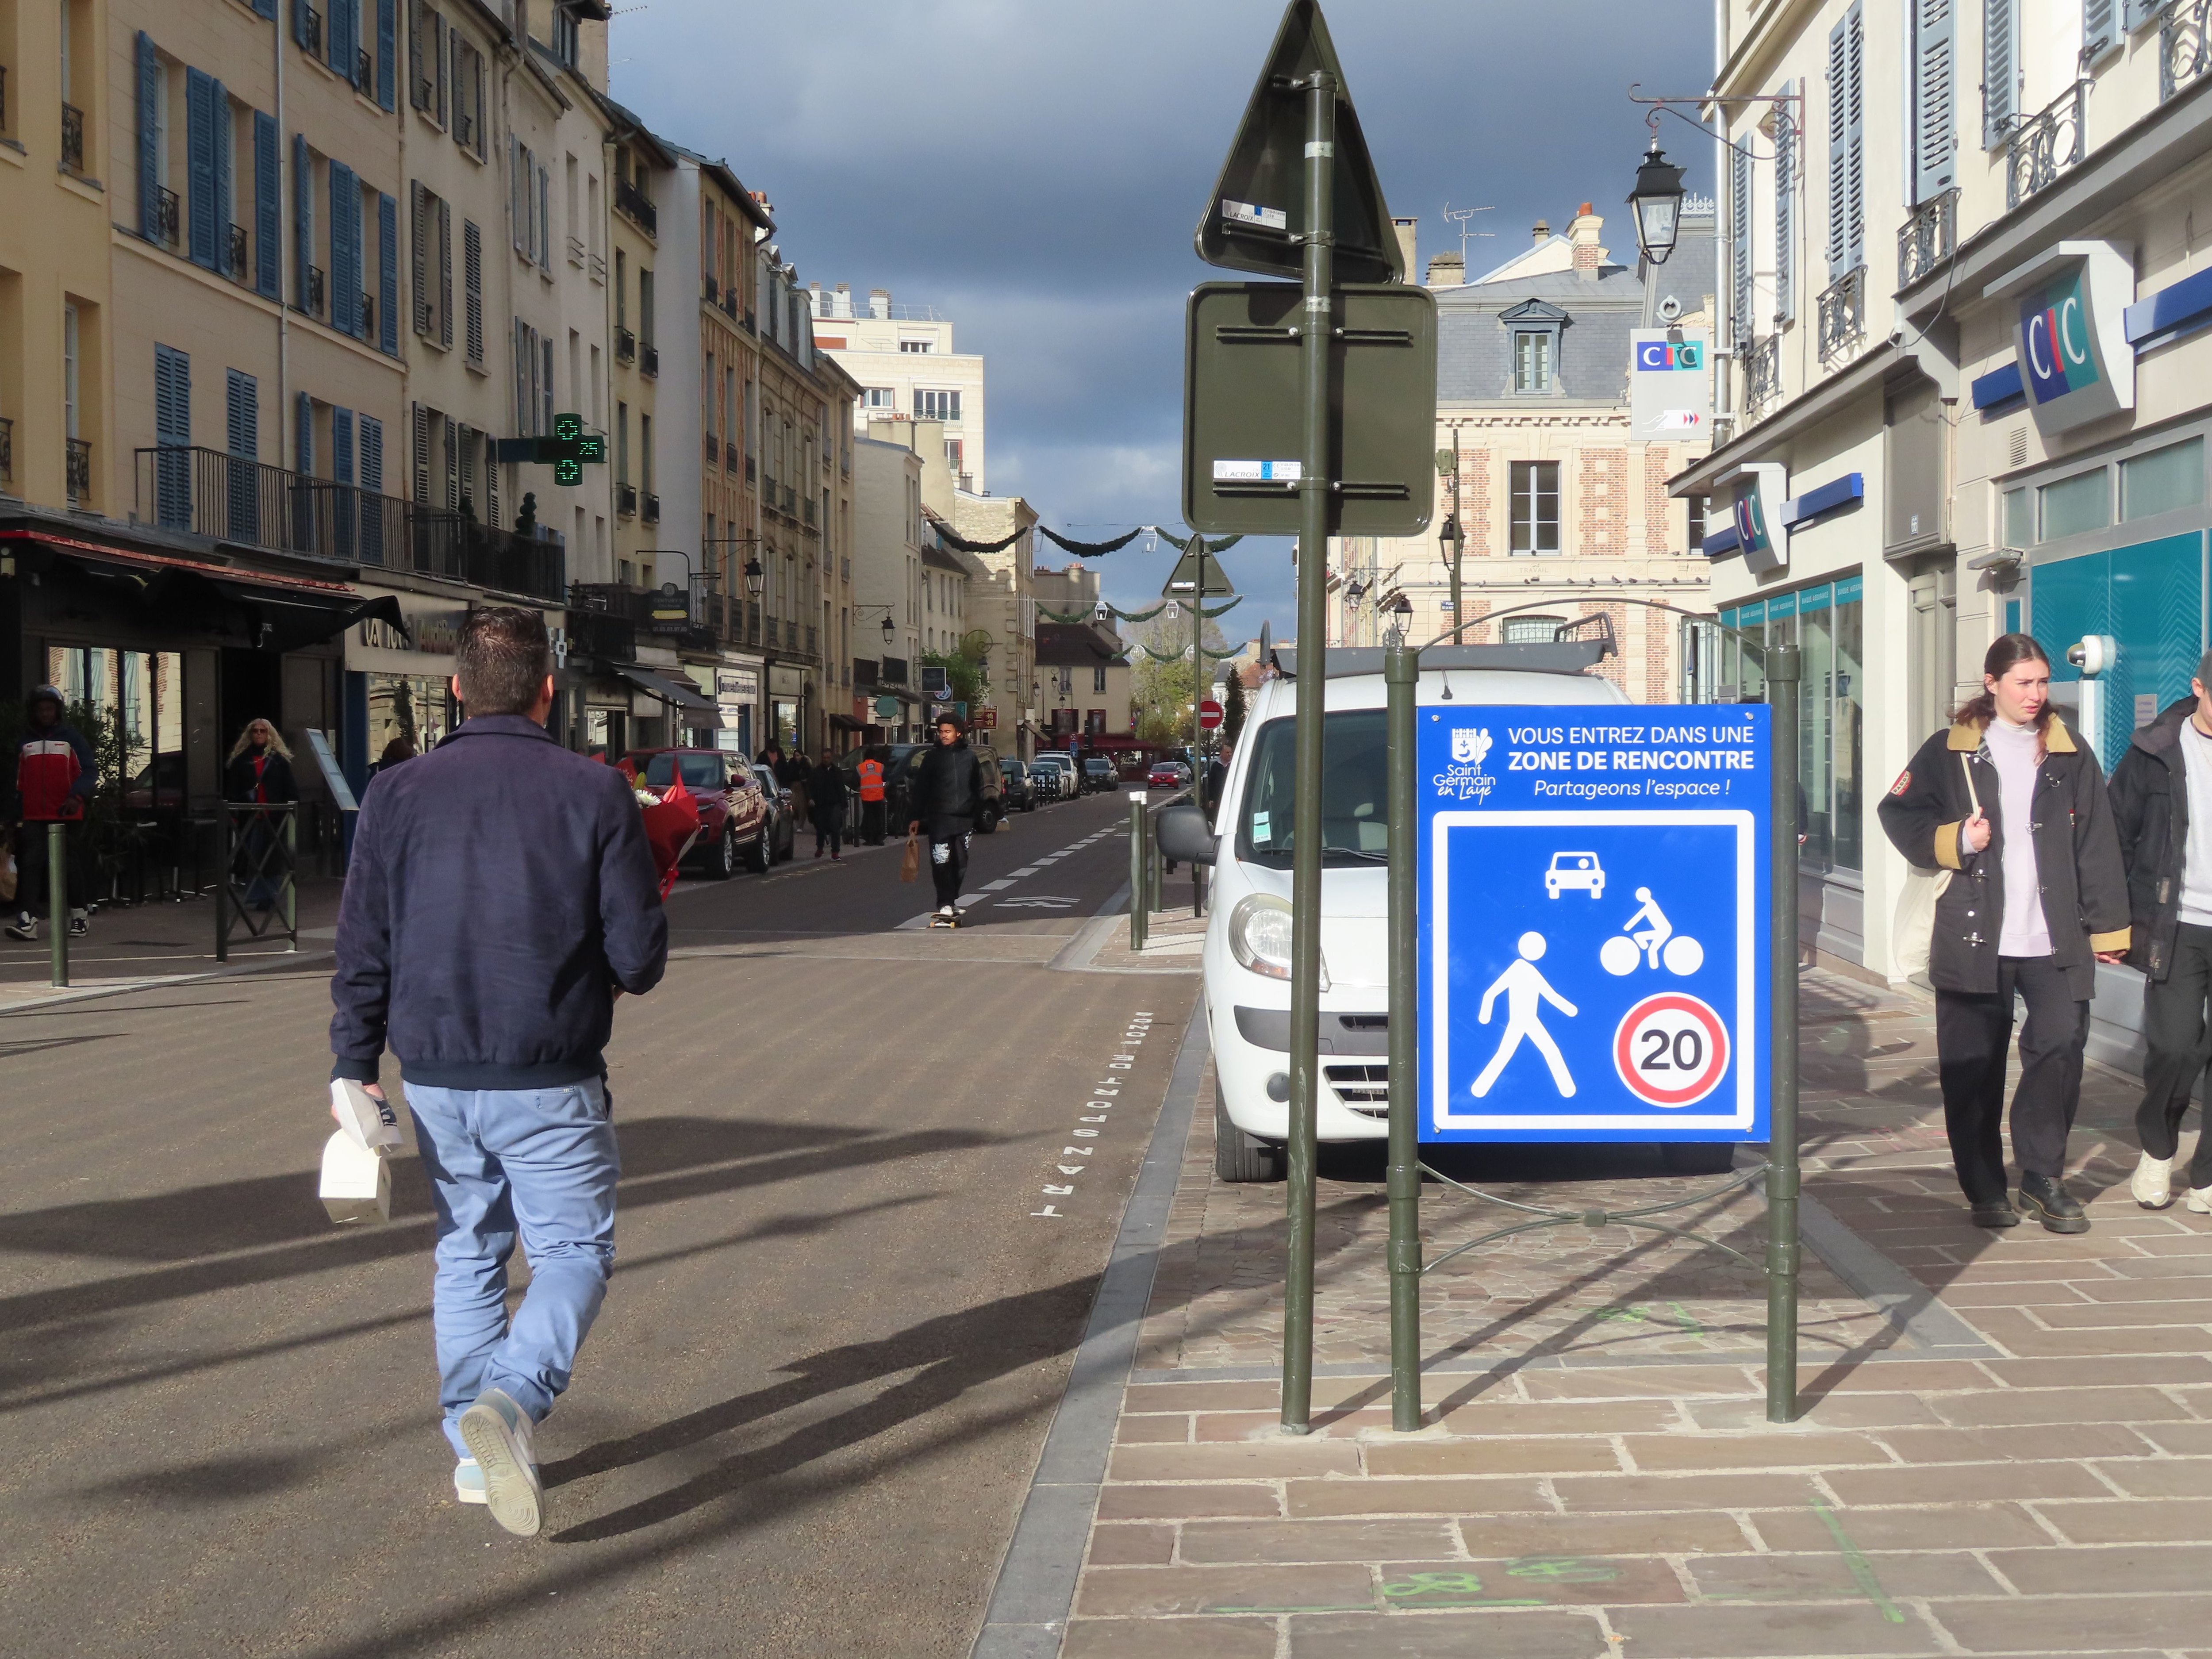 Saint-Germain-en-Laye (Yvelines), le 25 novembre. Les piétons peuvent désormais marcher sur la chaussée et traverser où ils le souhaitent dans le périmètre défini. LP/Sébastien Birden